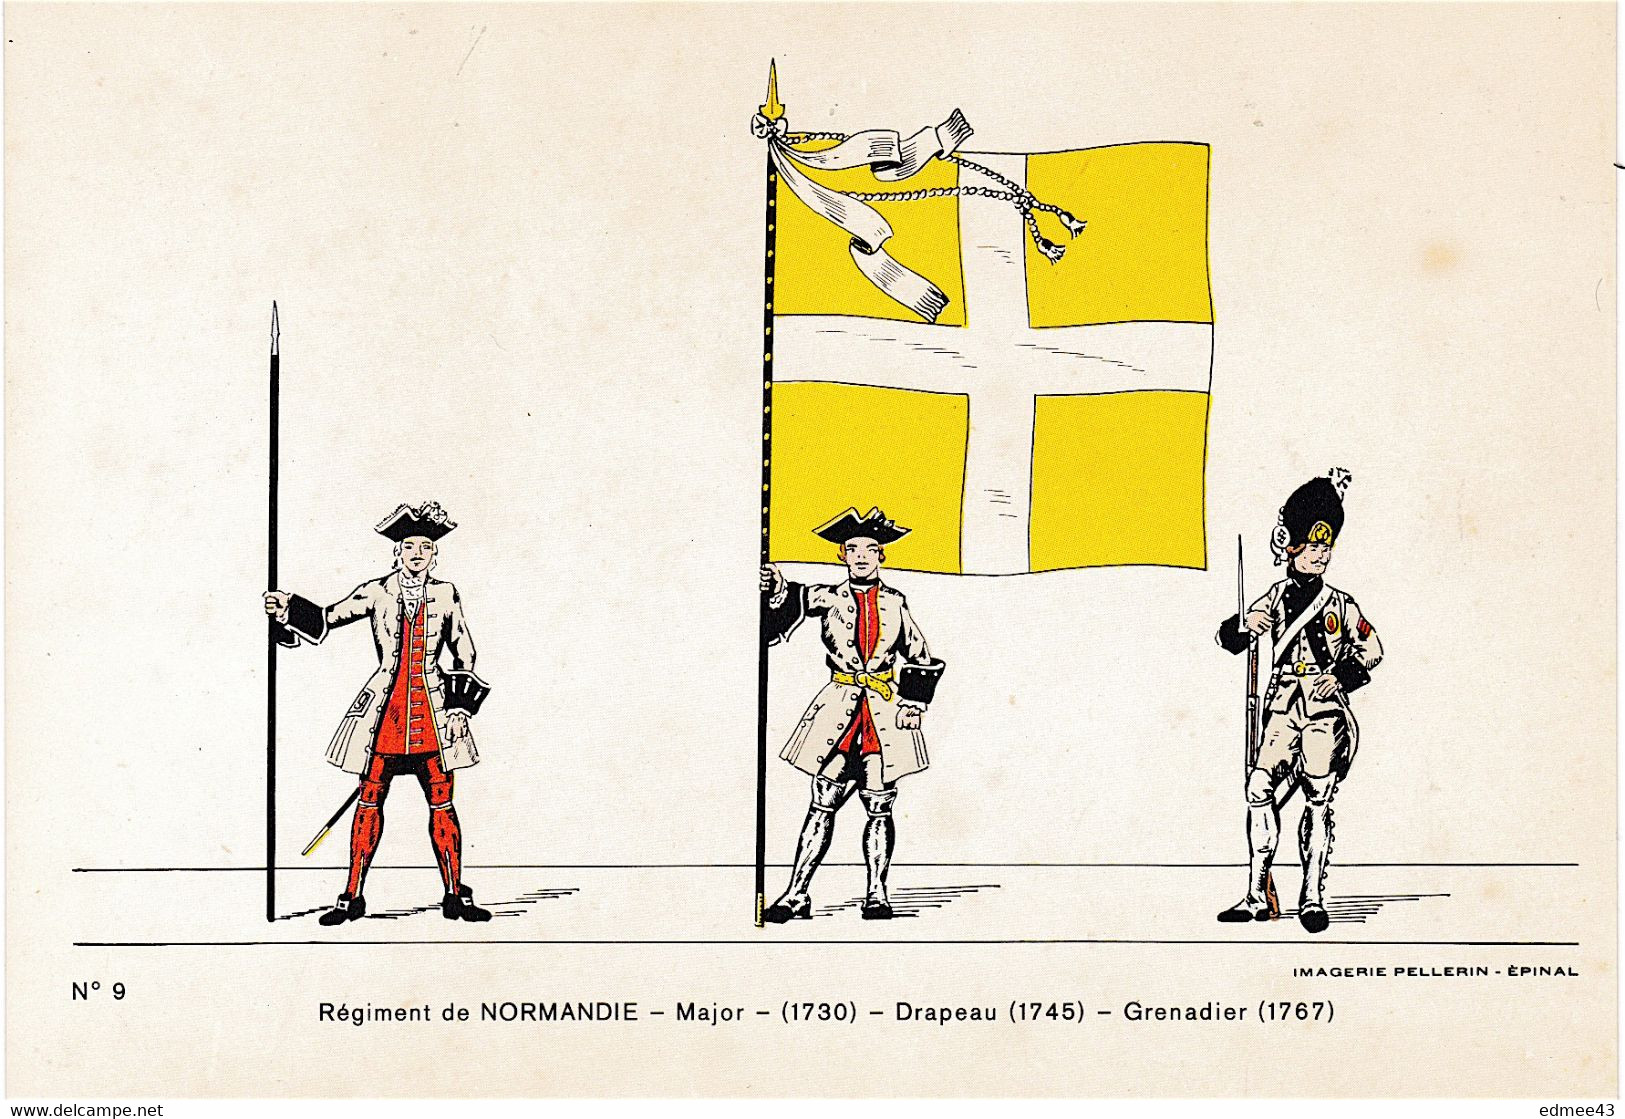 Jolie CP Série éditée En 1978 Imagerie Pellerin, N°9 Régiment De Normandie,18e Siècle - Vlaggen